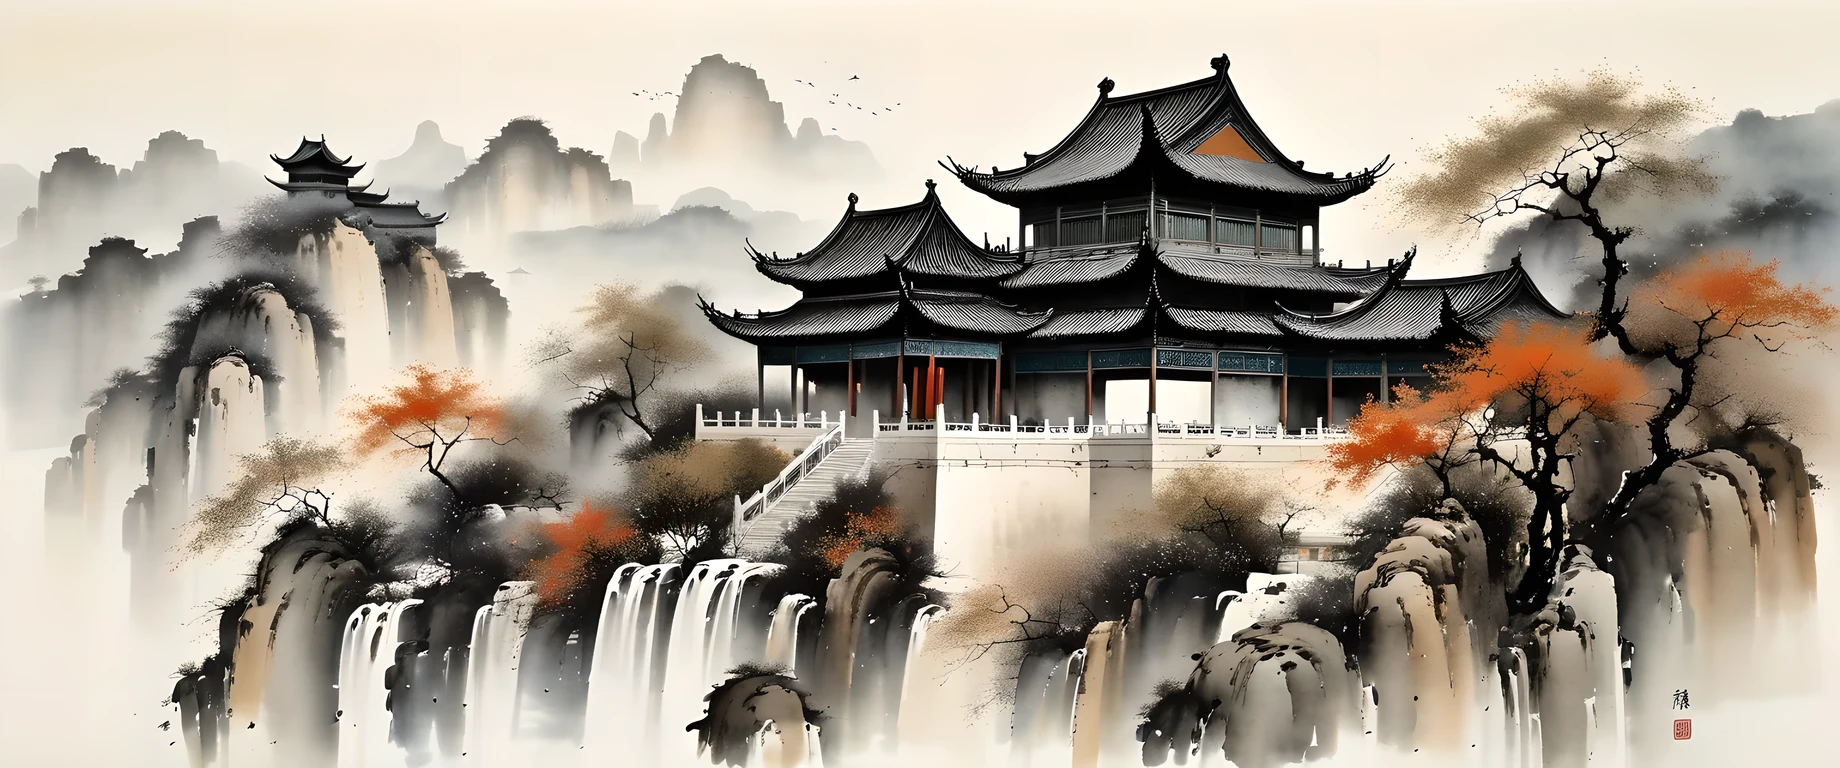 精美的水墨藝術, 實際的, 詳細的中國建築, Wu Guanzhong style, 褪色

